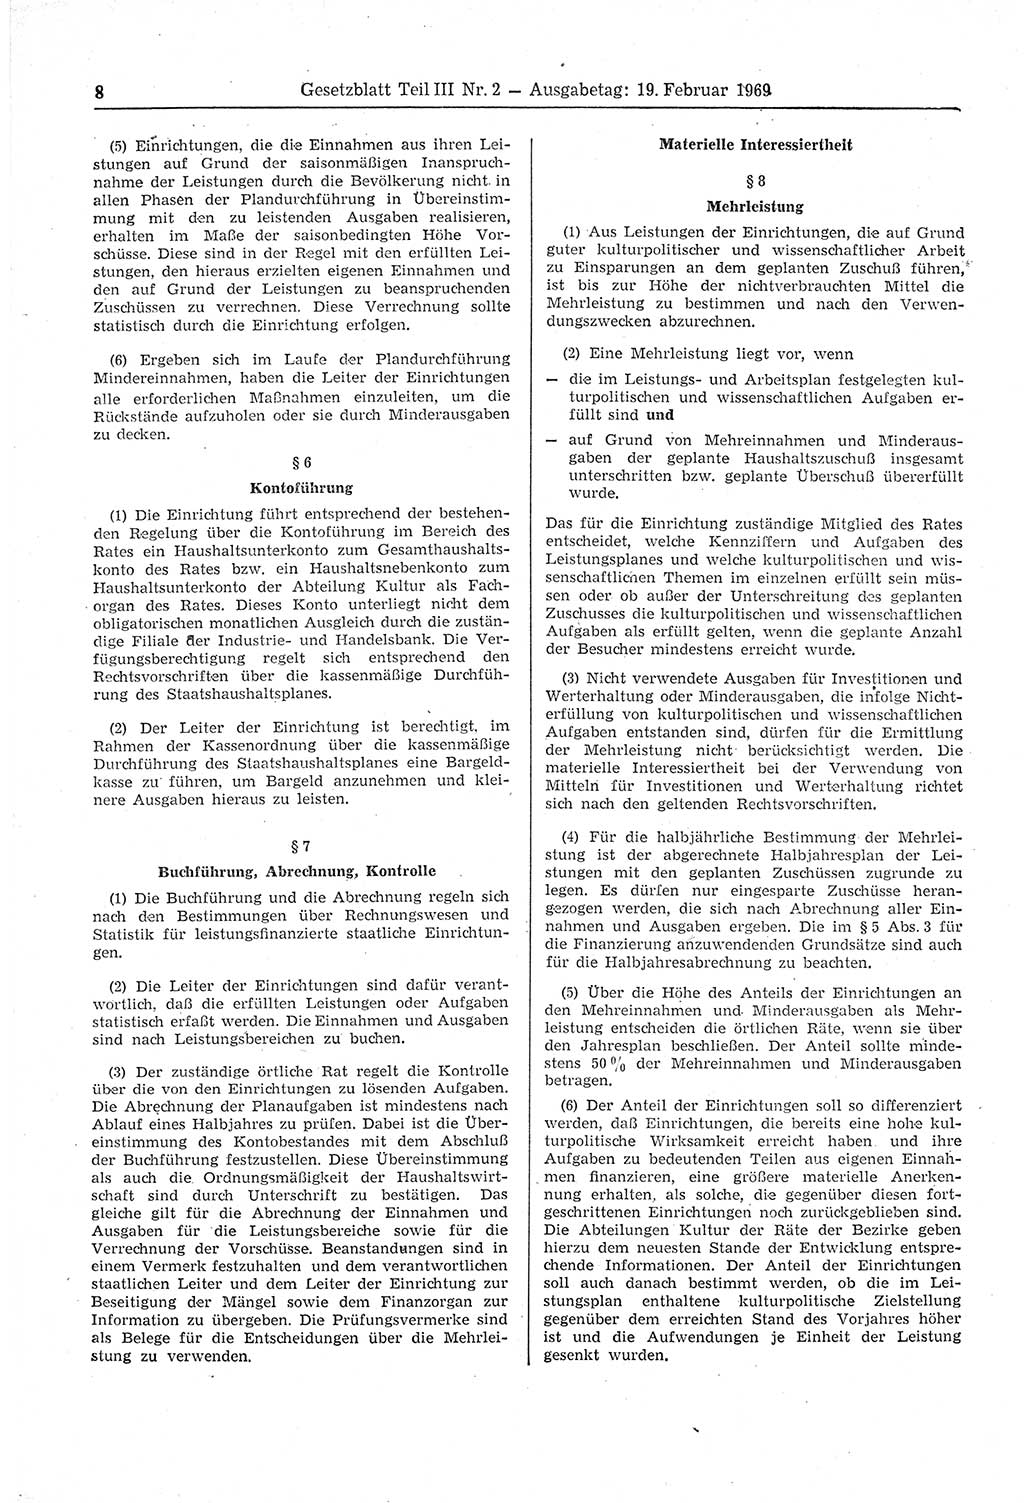 Gesetzblatt (GBl.) der Deutschen Demokratischen Republik (DDR) Teil ⅠⅠⅠ 1969, Seite 8 (GBl. DDR ⅠⅠⅠ 1969, S. 8)